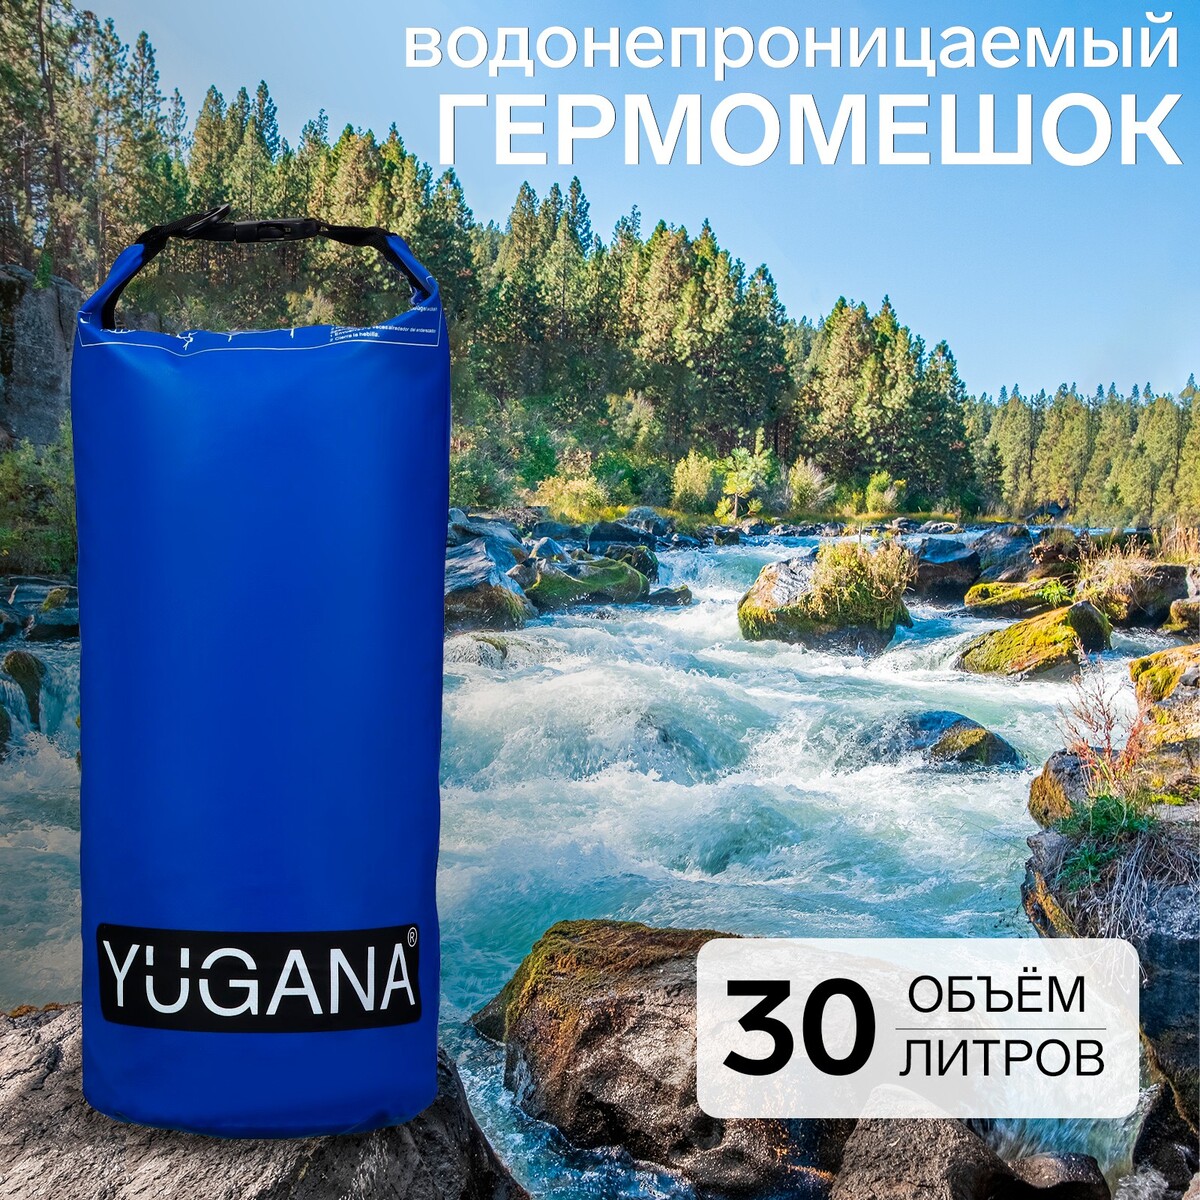 Гермомешок yugana, пвх, водонепроницаемый 30 литров, один ремень, синий ремень для чемодана или сумки с кодовым замком тундра синий